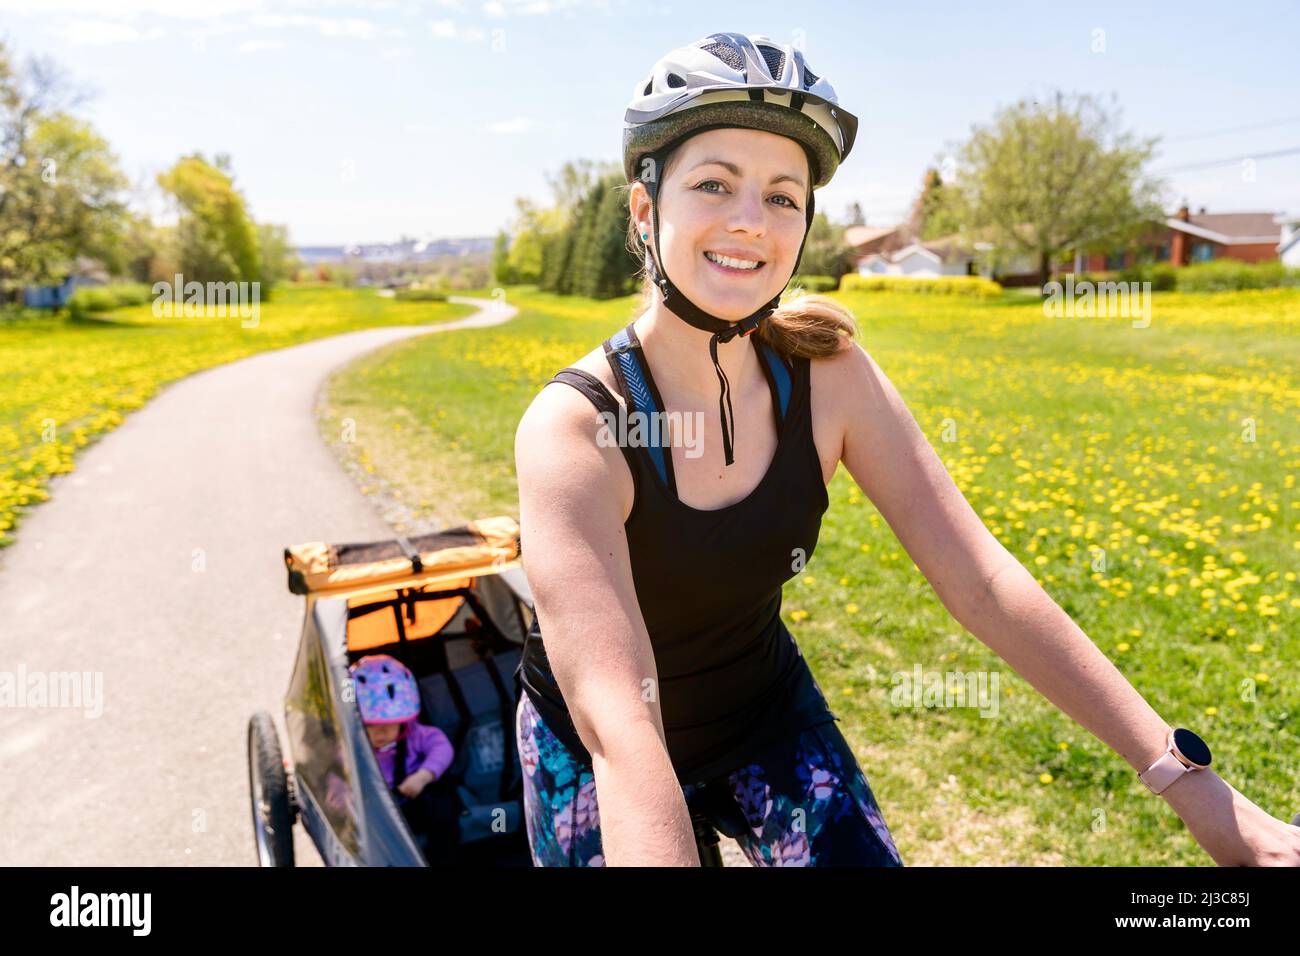 Frau, die mit einem Kinderwagen auf dem Fahrrad unterwegs ist. Stockfoto